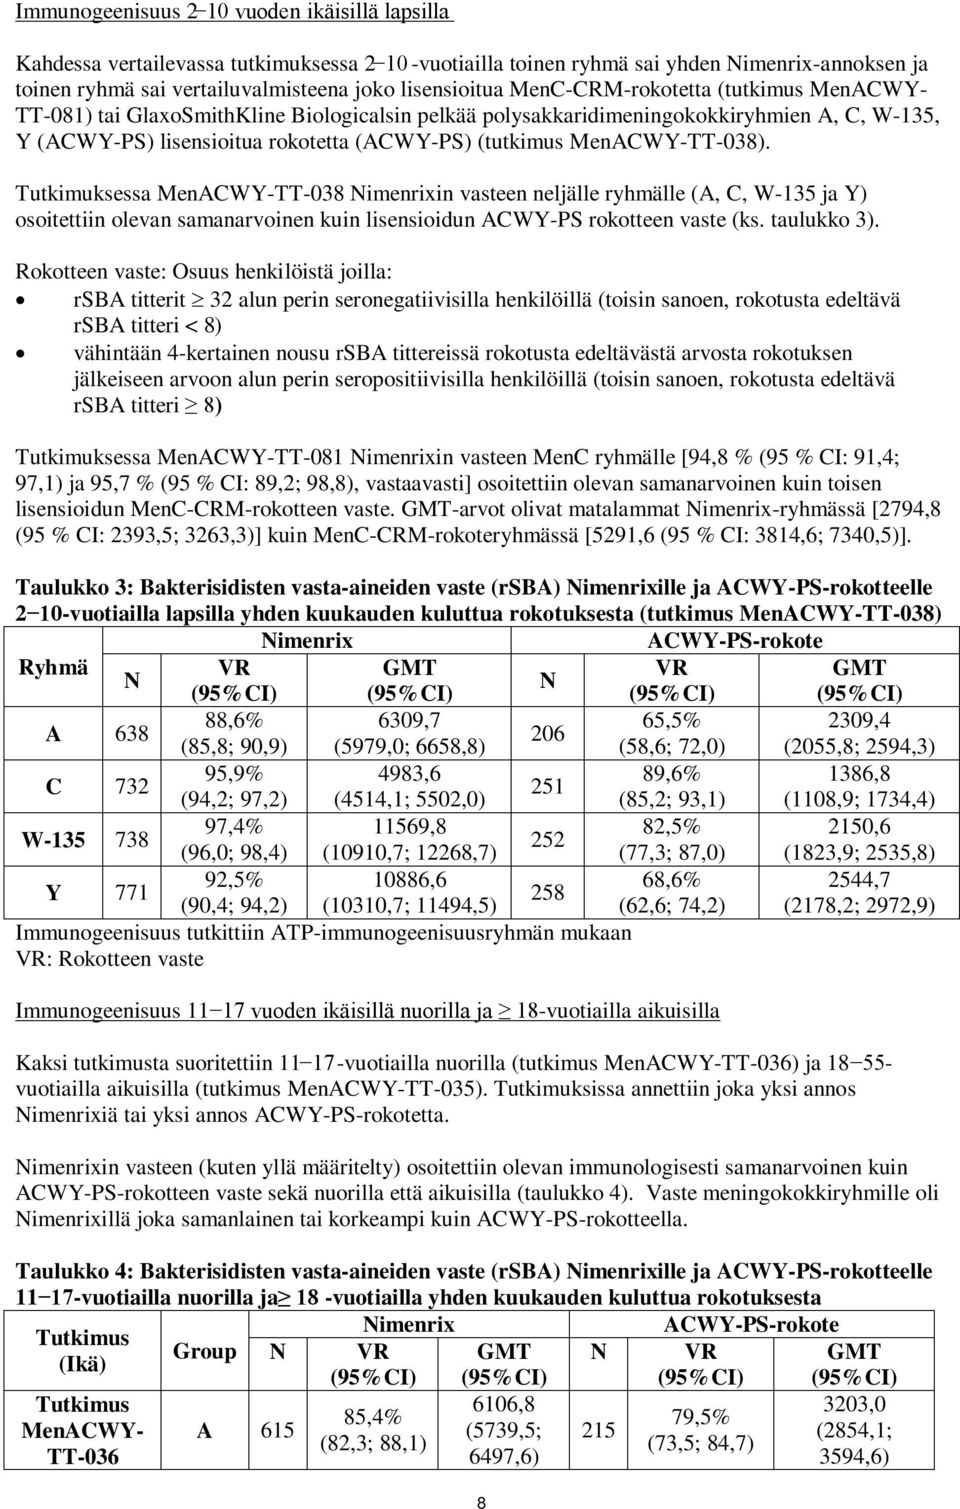 MenACWY-TT-038). Tutkimuksessa MenACWY-TT-038 imenrixin vasteen neljälle ryhmälle (A, C, W-135 ja Y) osoitettiin olevan samanarvoinen kuin lisensioidun ACWY-PS rokotteen vaste (ks. taulukko 3).